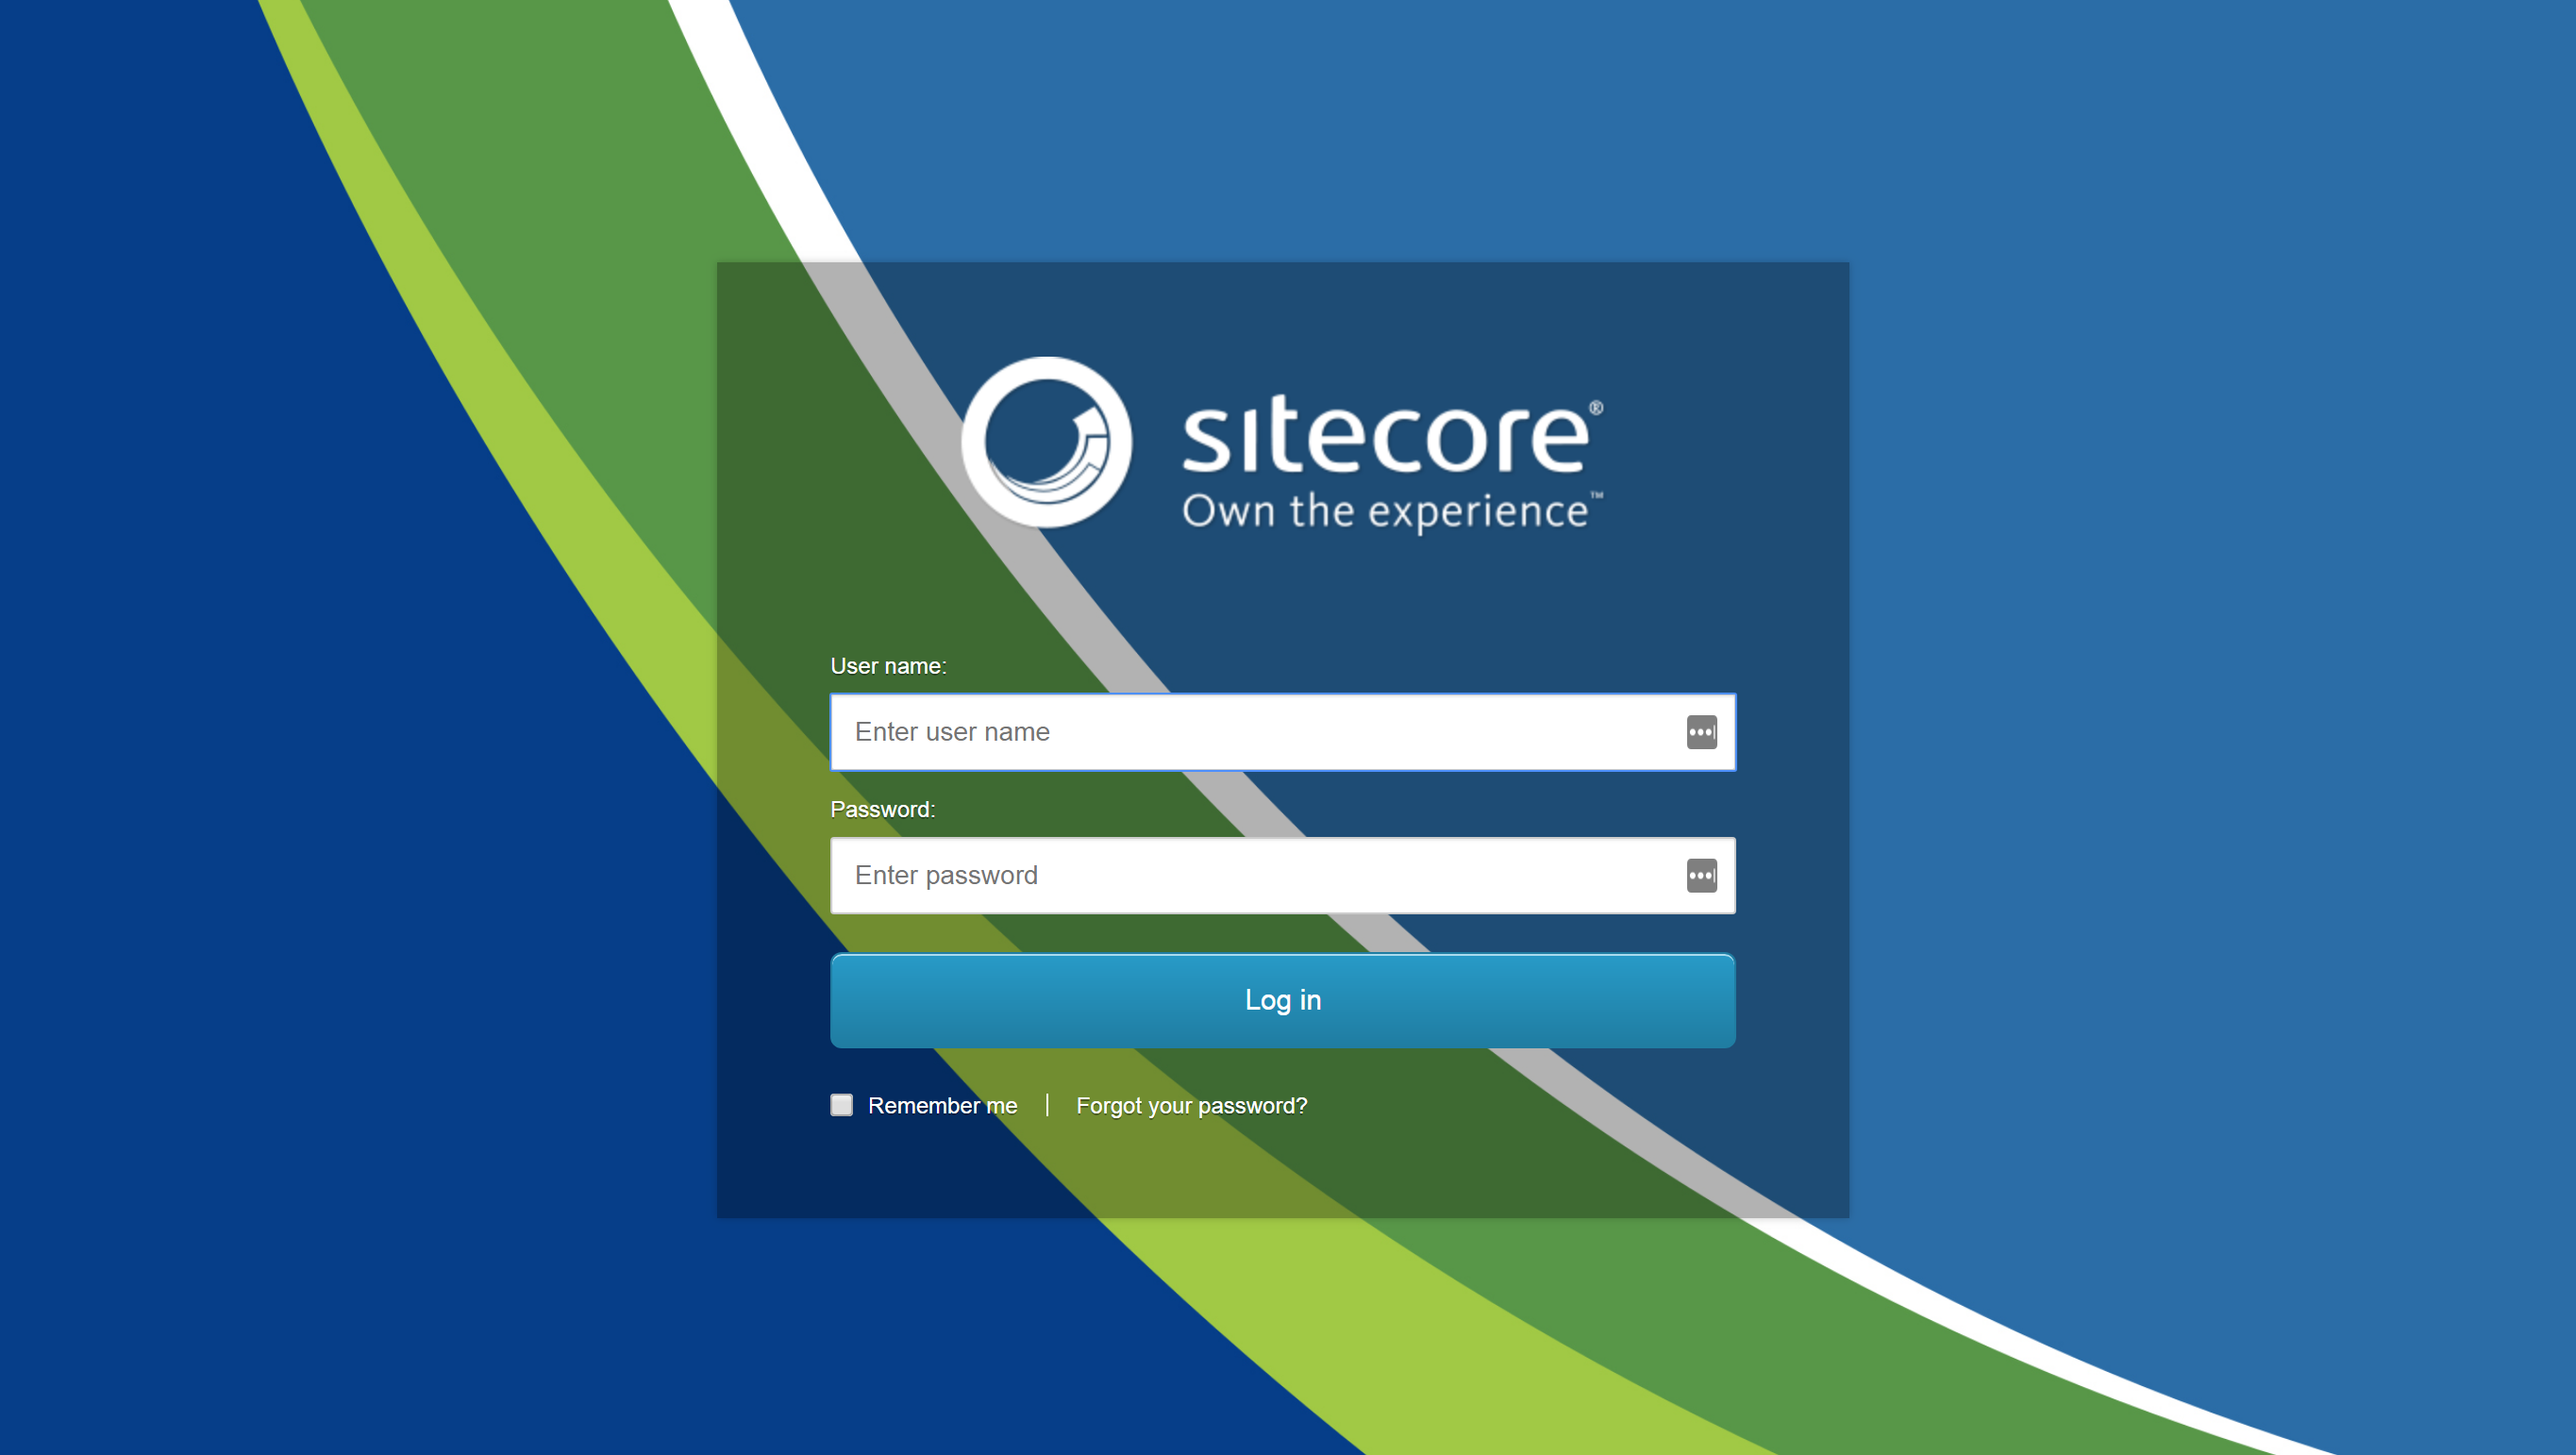 Bạn muốn tạo sự khác biệt cho trang đăng nhập Sitecore của mình? Việc thay đổi hình nền đăng nhập sẽ giúp bạn làm được điều đó! Xem hình ảnh để tìm kiếm những hình nền đẹp mắt để thay đổi và làm mới trang đăng nhập của bạn.